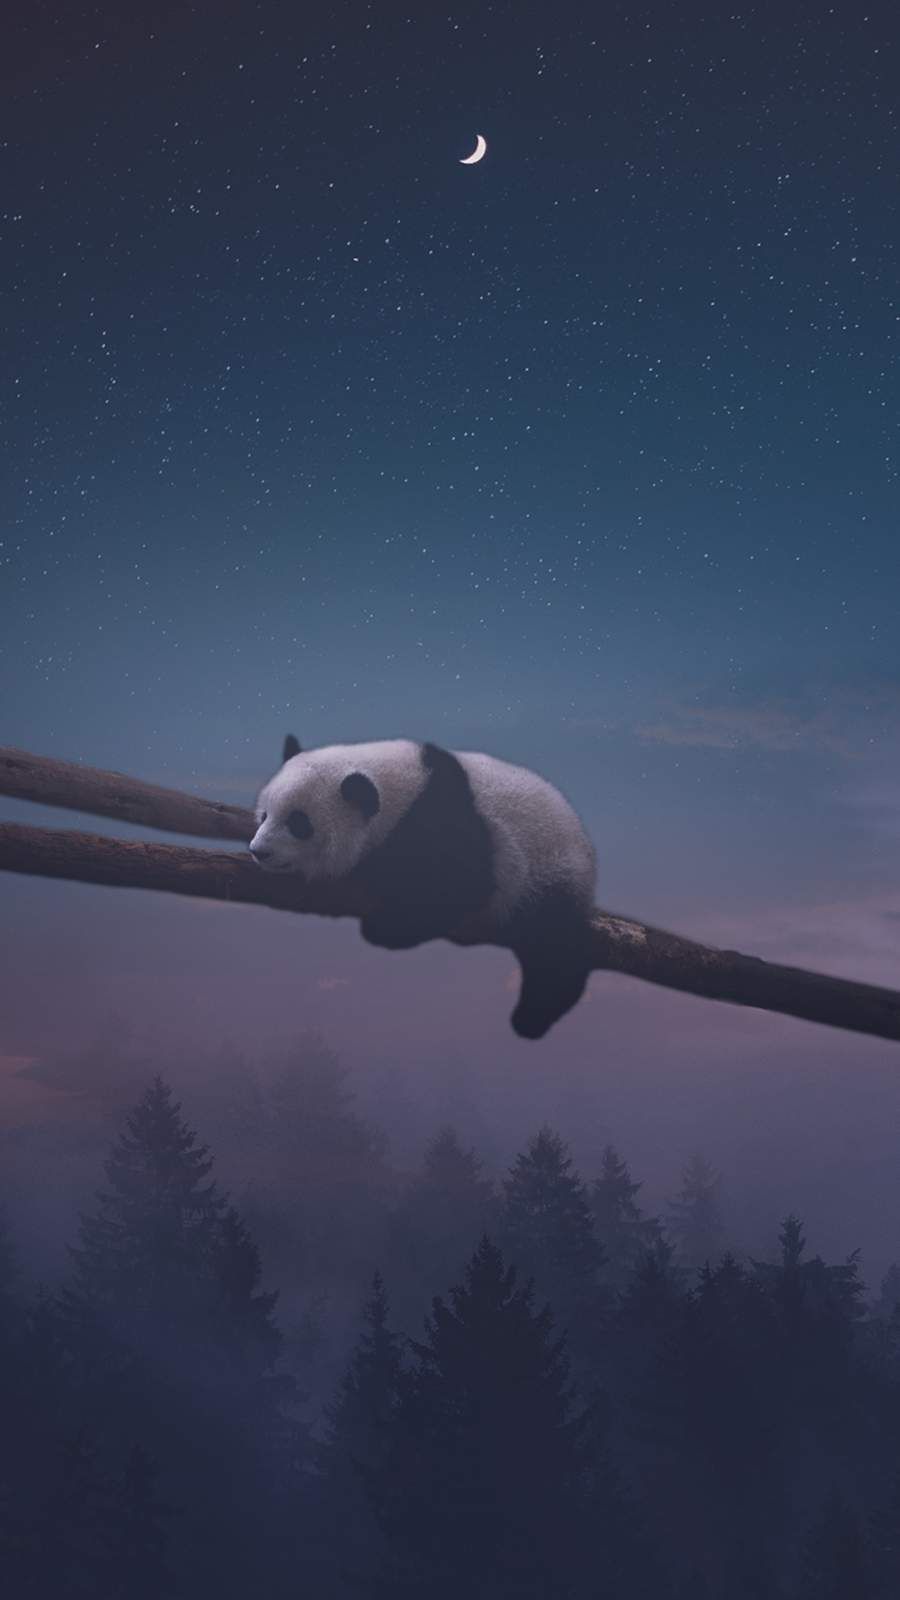 Sleeping Panda iPhone Wallpaper. Cute panda wallpaper, Panda bears wallpaper, Panda wallpaper iphone